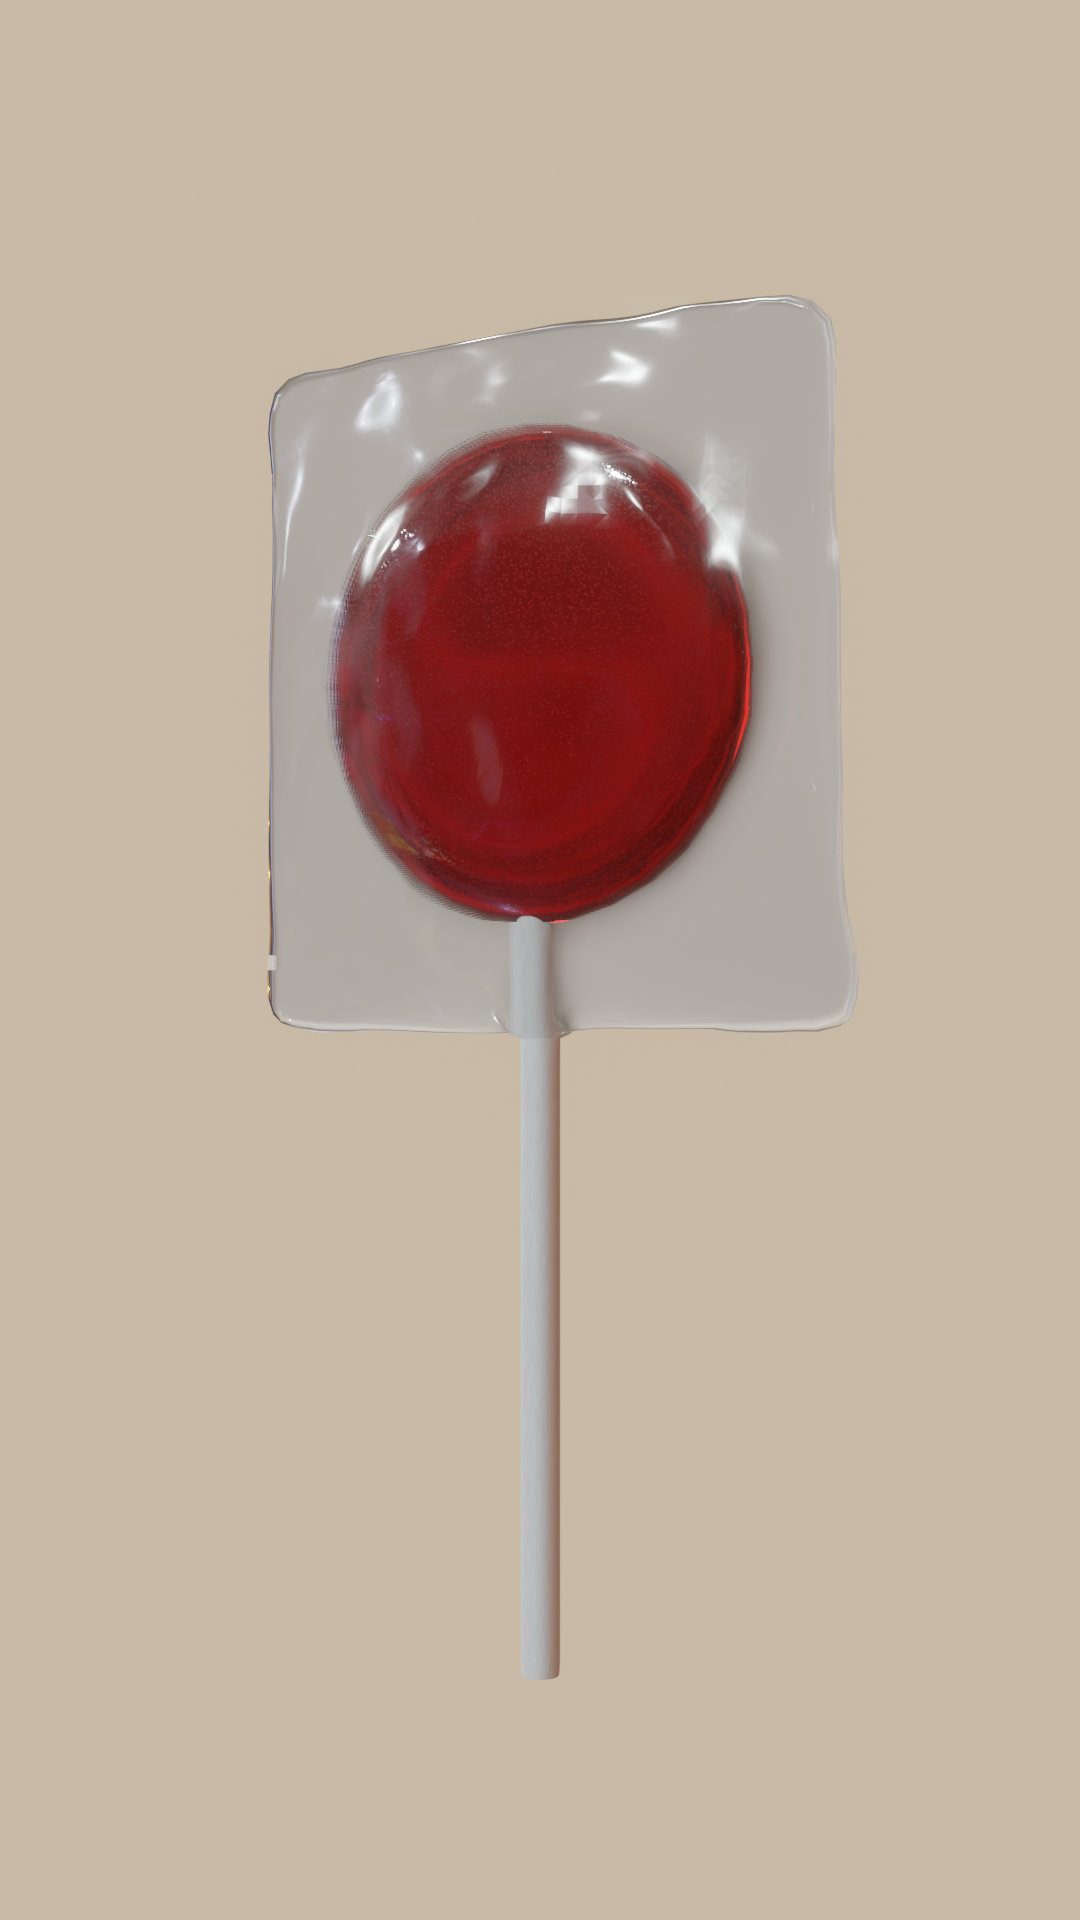 Lollipop preview image 1